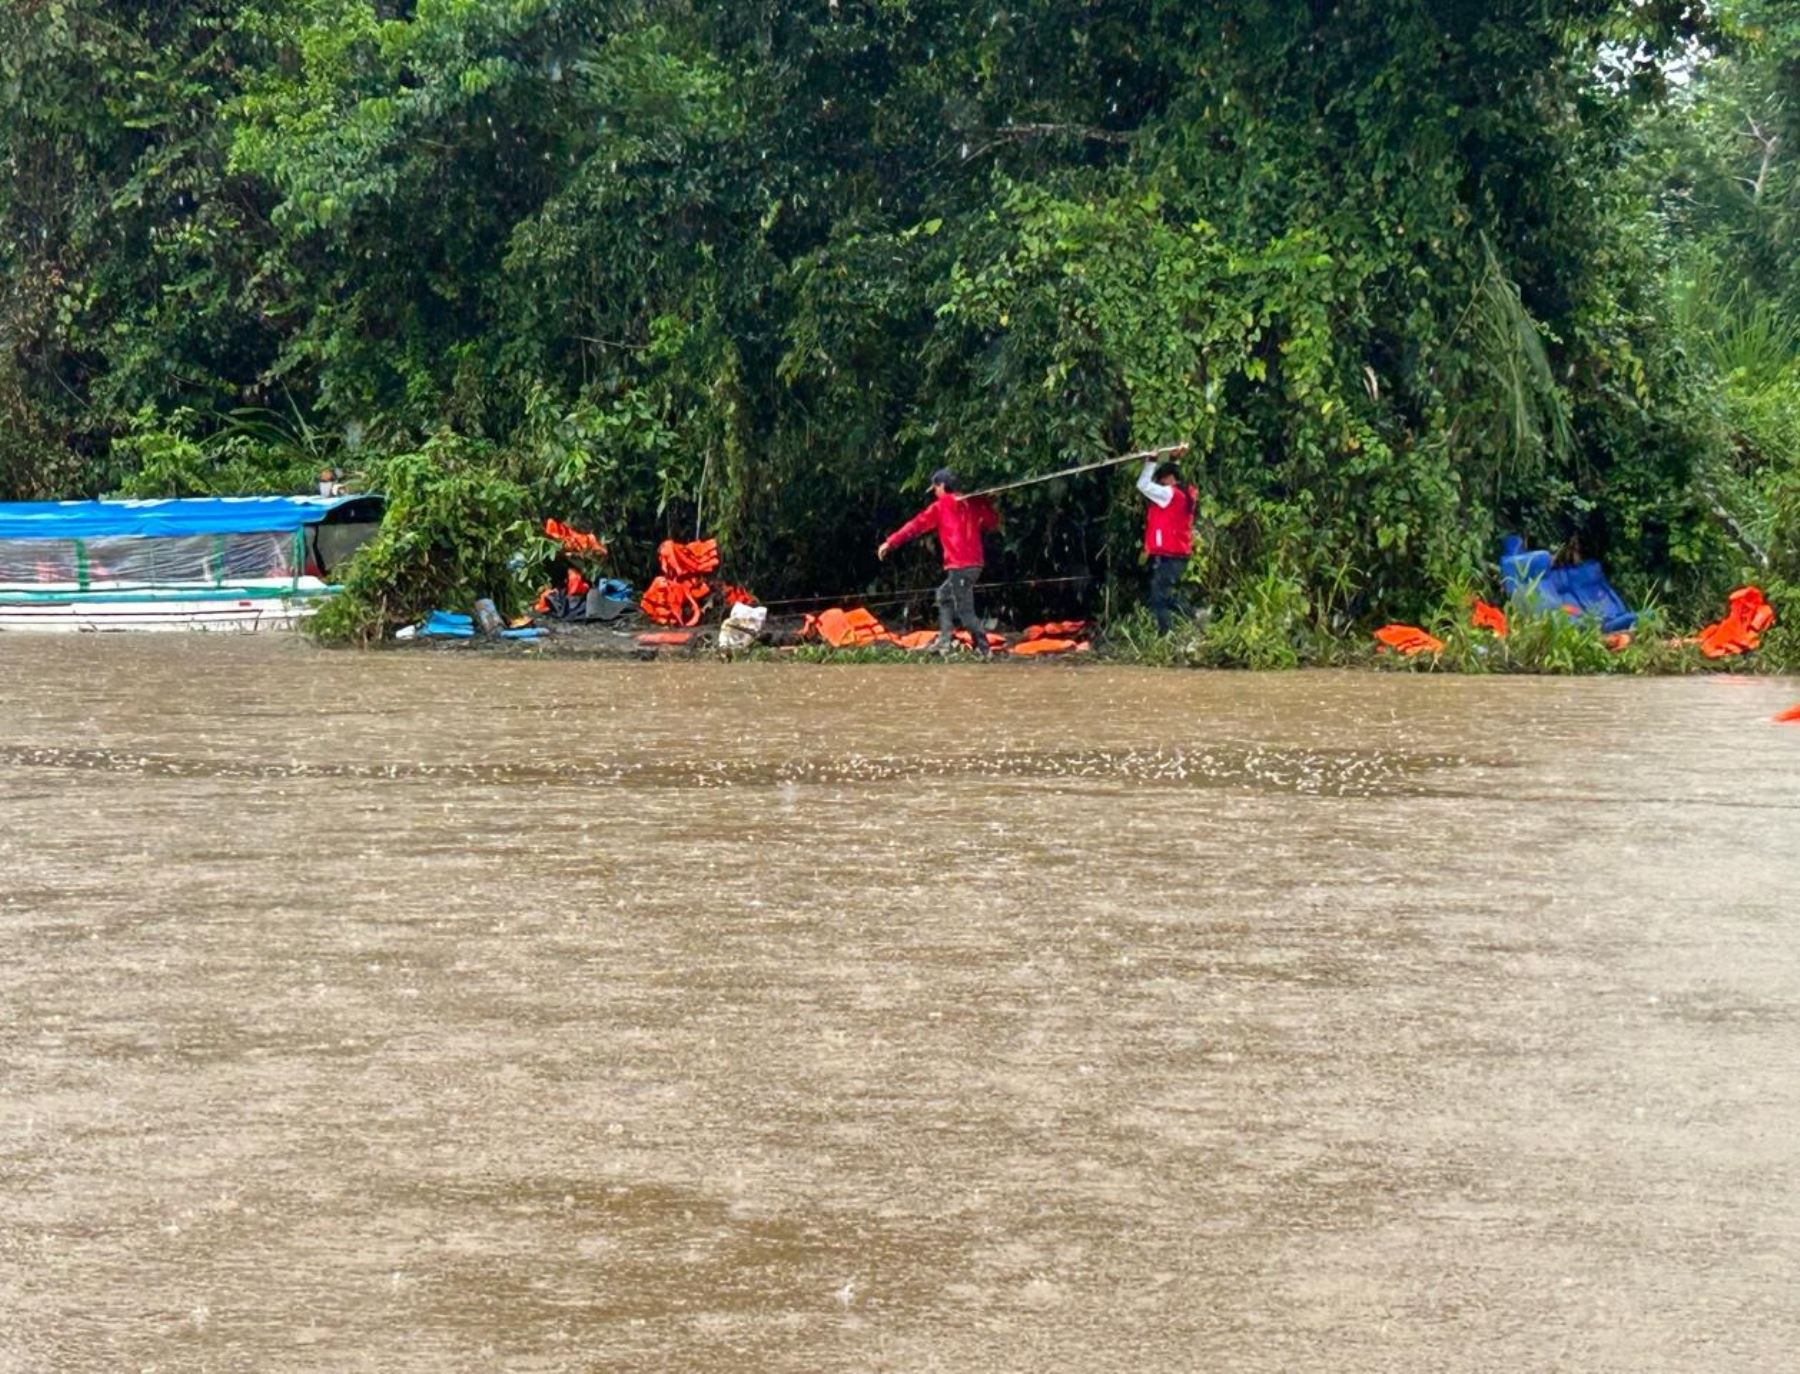 Buzos especializados en búsqueda con el apoyo de drones realizan la búsqueda de desaparecidos en accidente fluvial registrado el sábado 30 de marzo en el río Tamaya, distrito de Masisea, región Ucayali.  ANDINA/Difusión